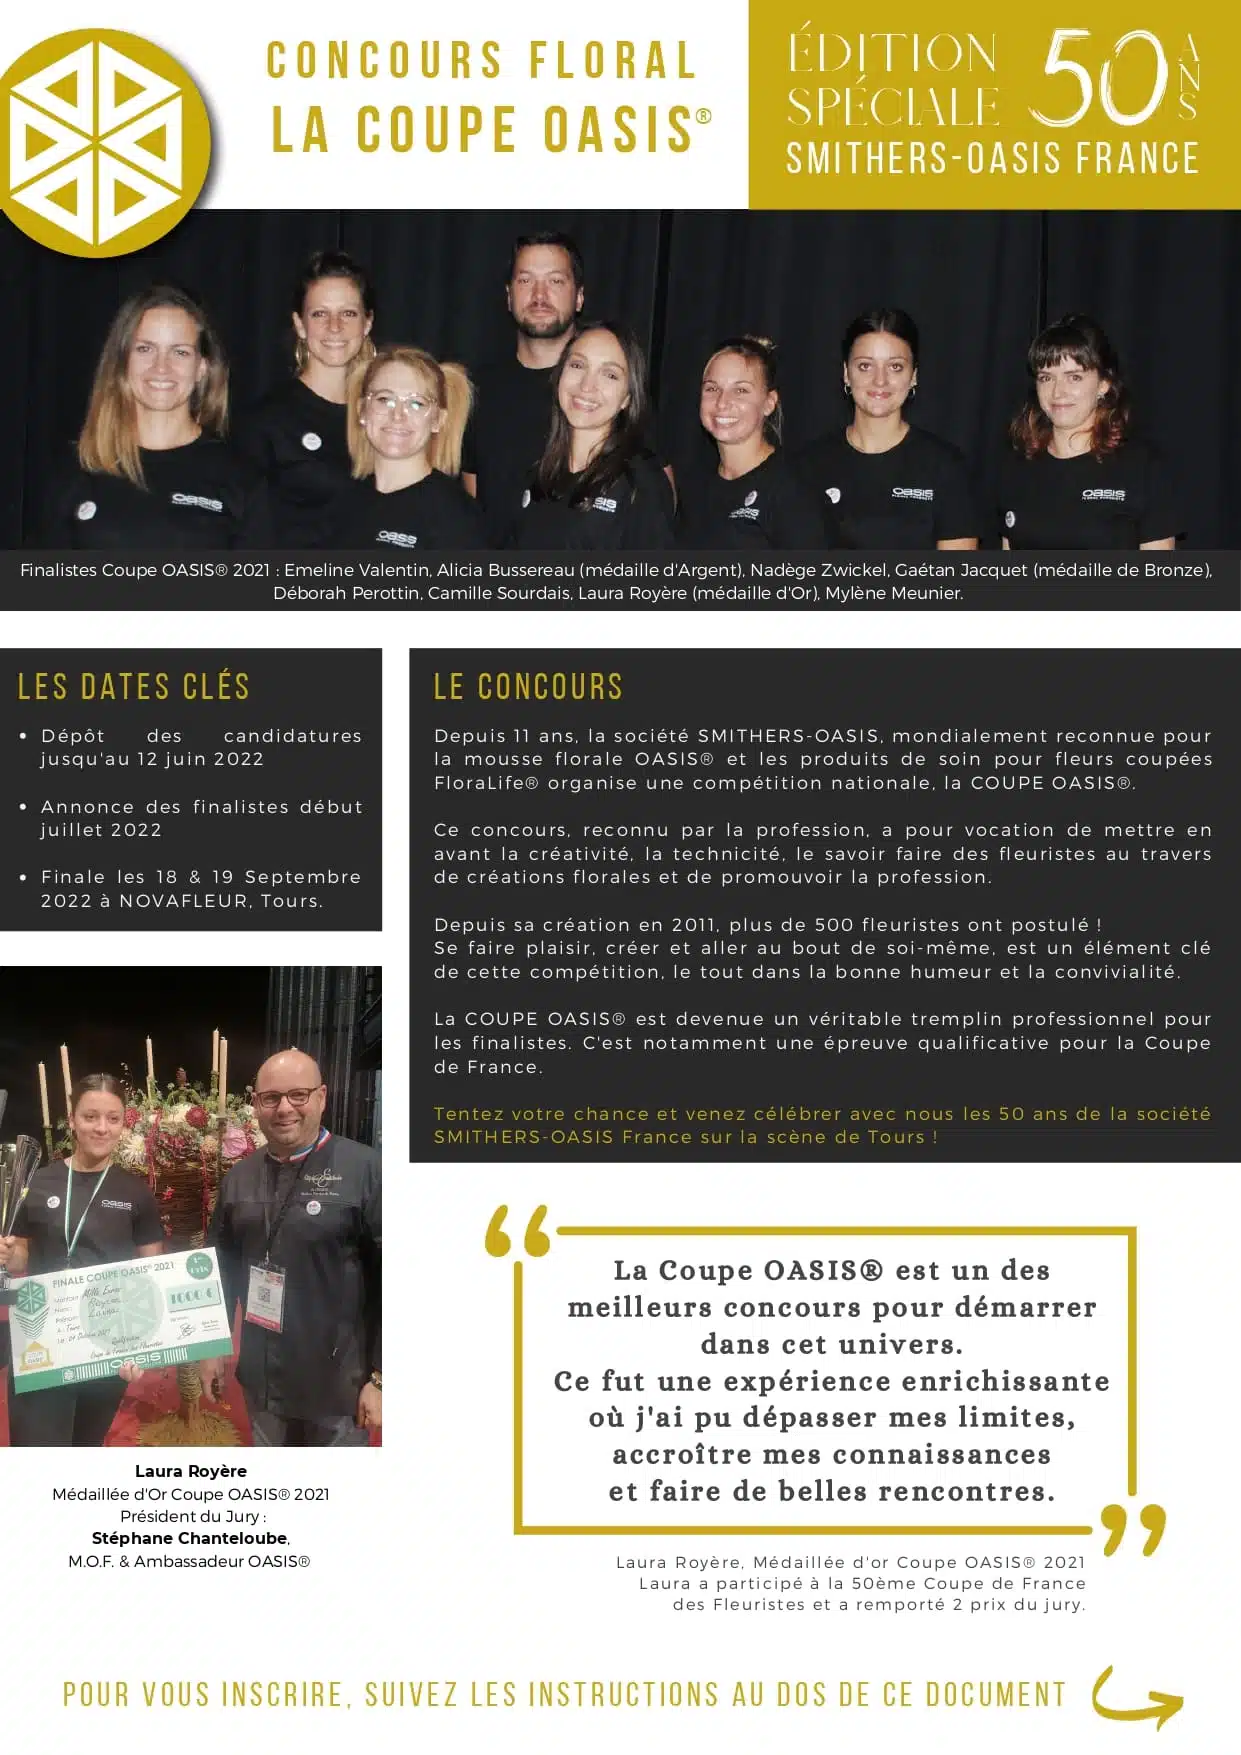 Novafleur 2022 - Les candidatures sont ouvertes pour la Coupe Edition Spéciale "50 ans de Smithers-Oasis France"